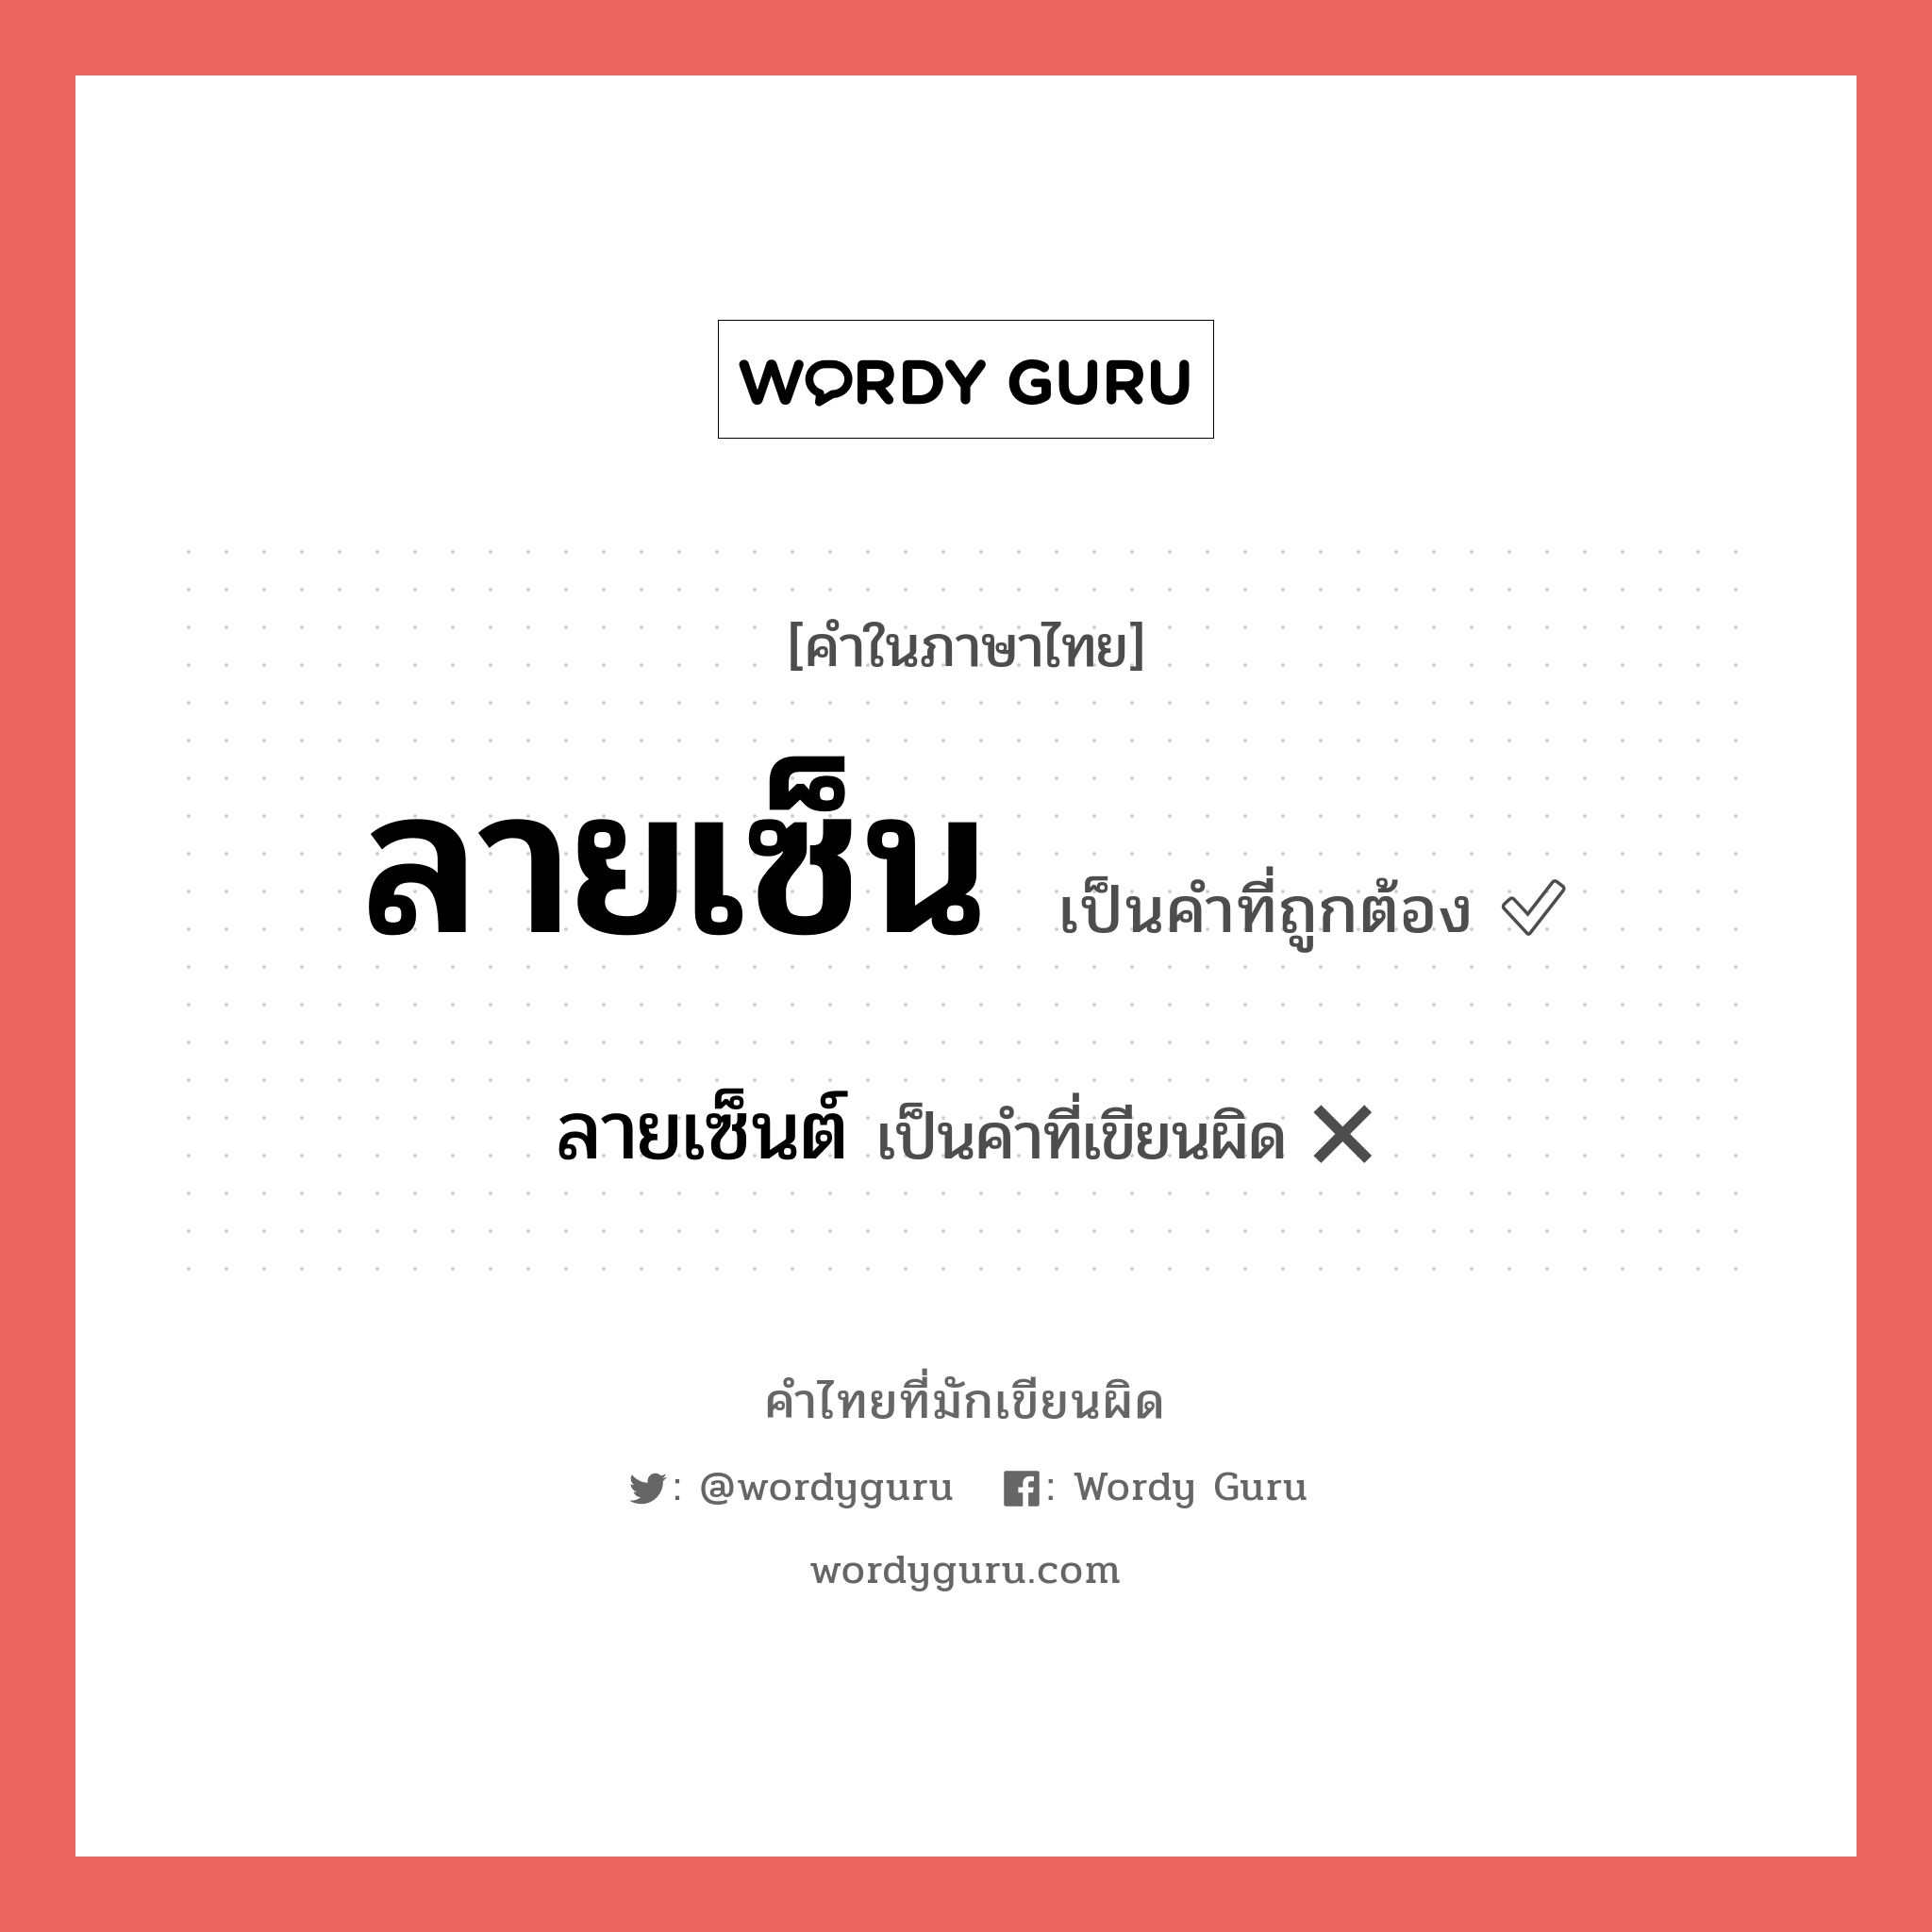 ลายเซ็น หรือ ลายเซ็นต์ คำไหนเขียนถูก?, คำในภาษาไทยที่มักเขียนผิด ลายเซ็น คำที่ผิด ❌ ลายเซ็นต์